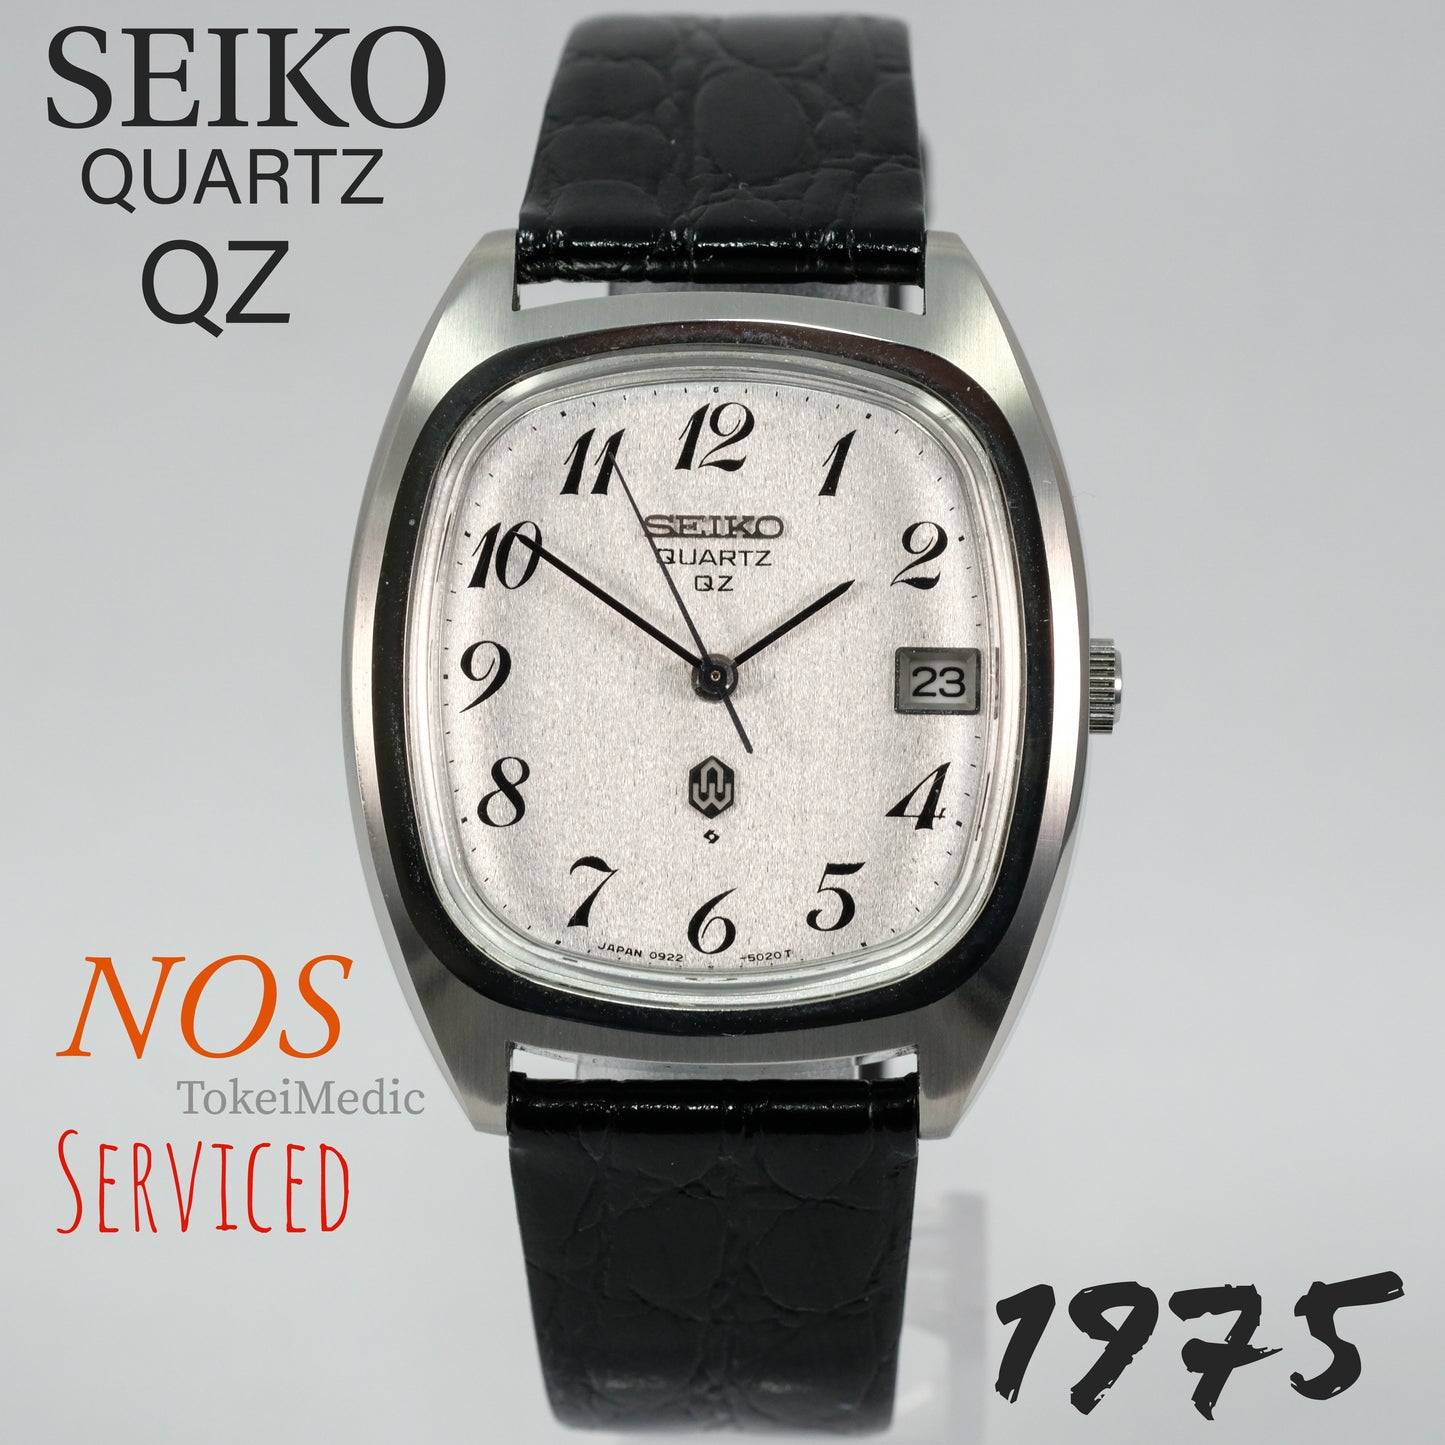 1975 NOS Seiko Quartz QZ 0922-5010